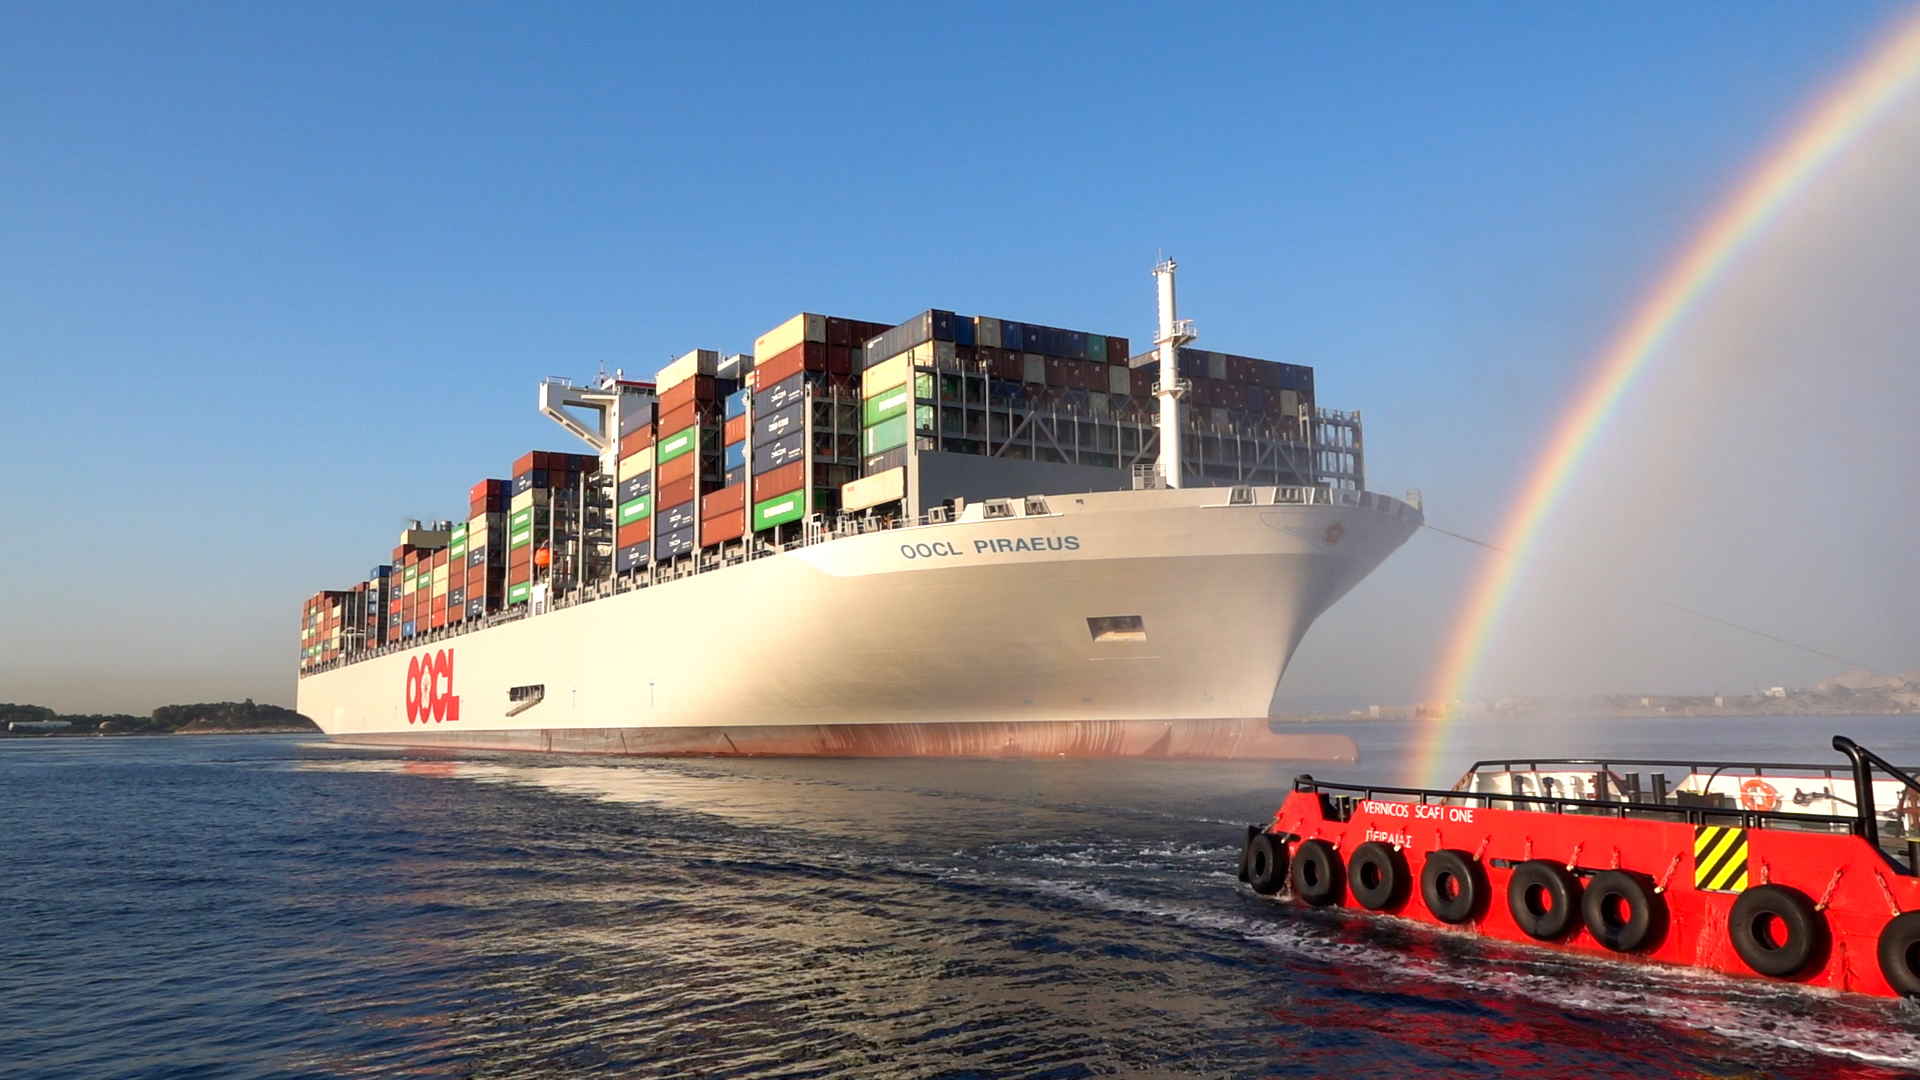 Ναυτιλία: «Εκρυψε» το λιμάνι του Πειραιά το γιγάντιο containership «OOCL Piraeus» [εικόνες]